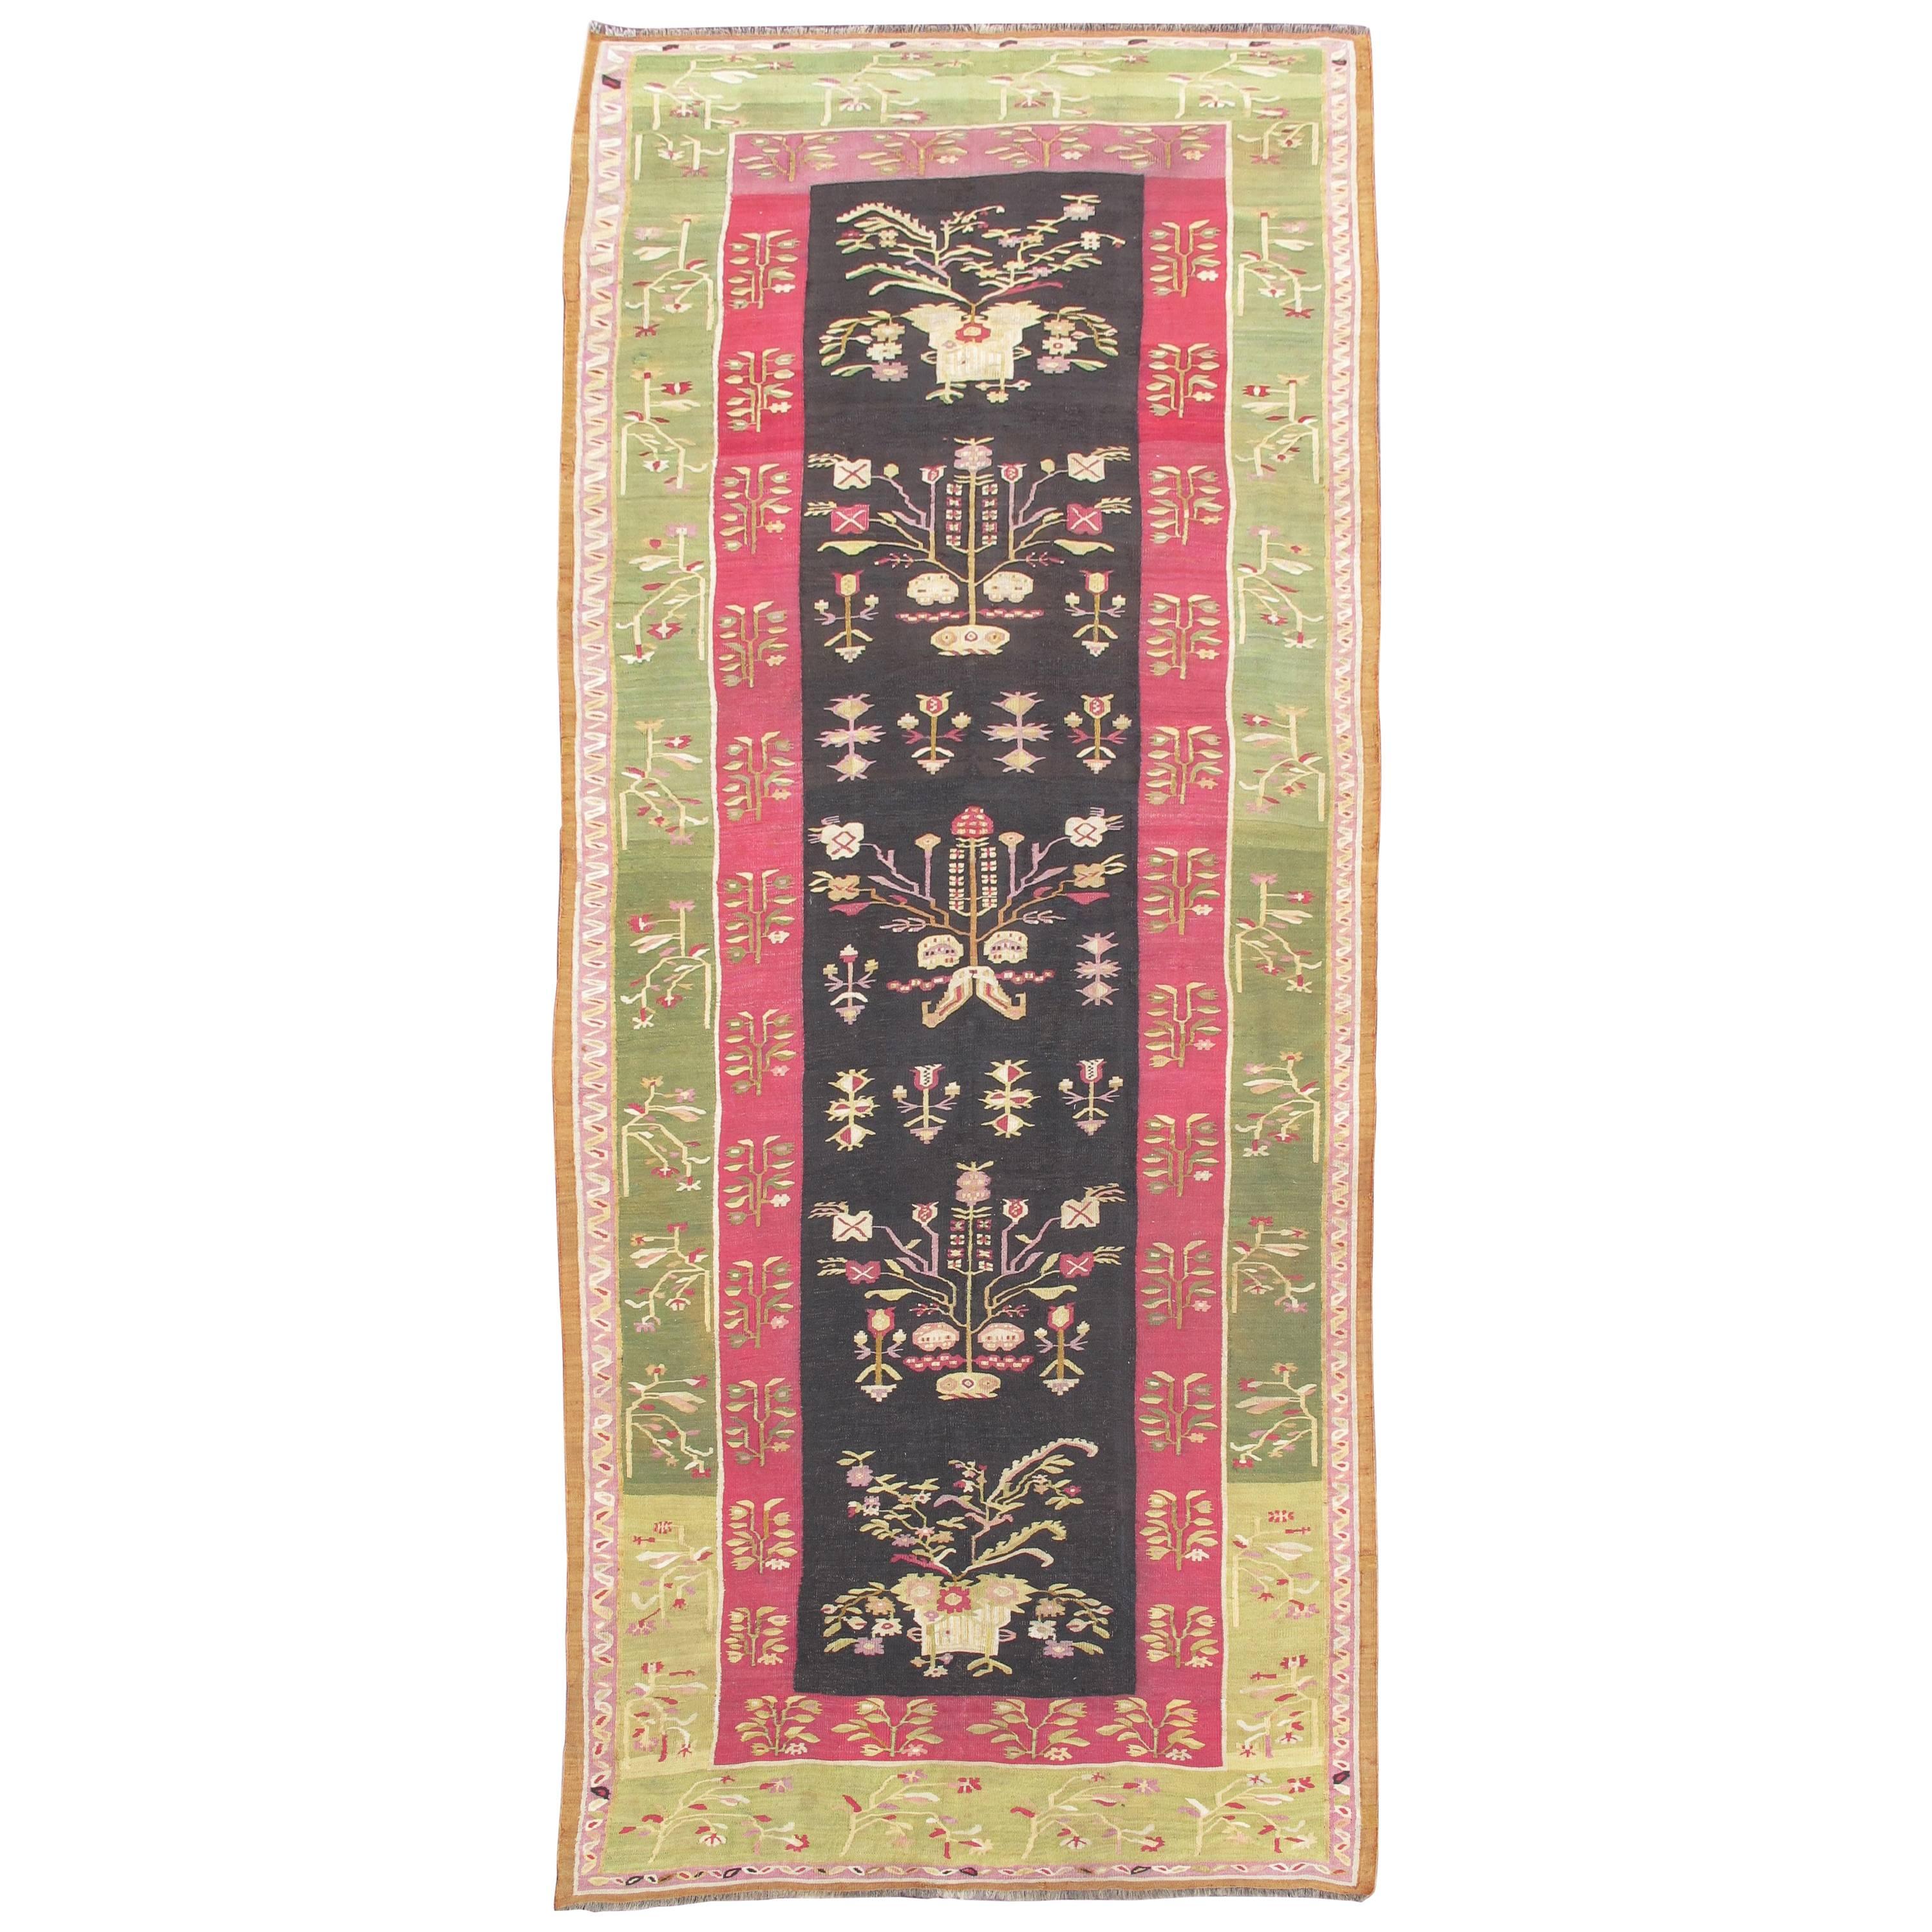 Tapis Kilim bessarabique floral exceptionnel du milieu du XIXᵉ siècle avec bordure vert clair